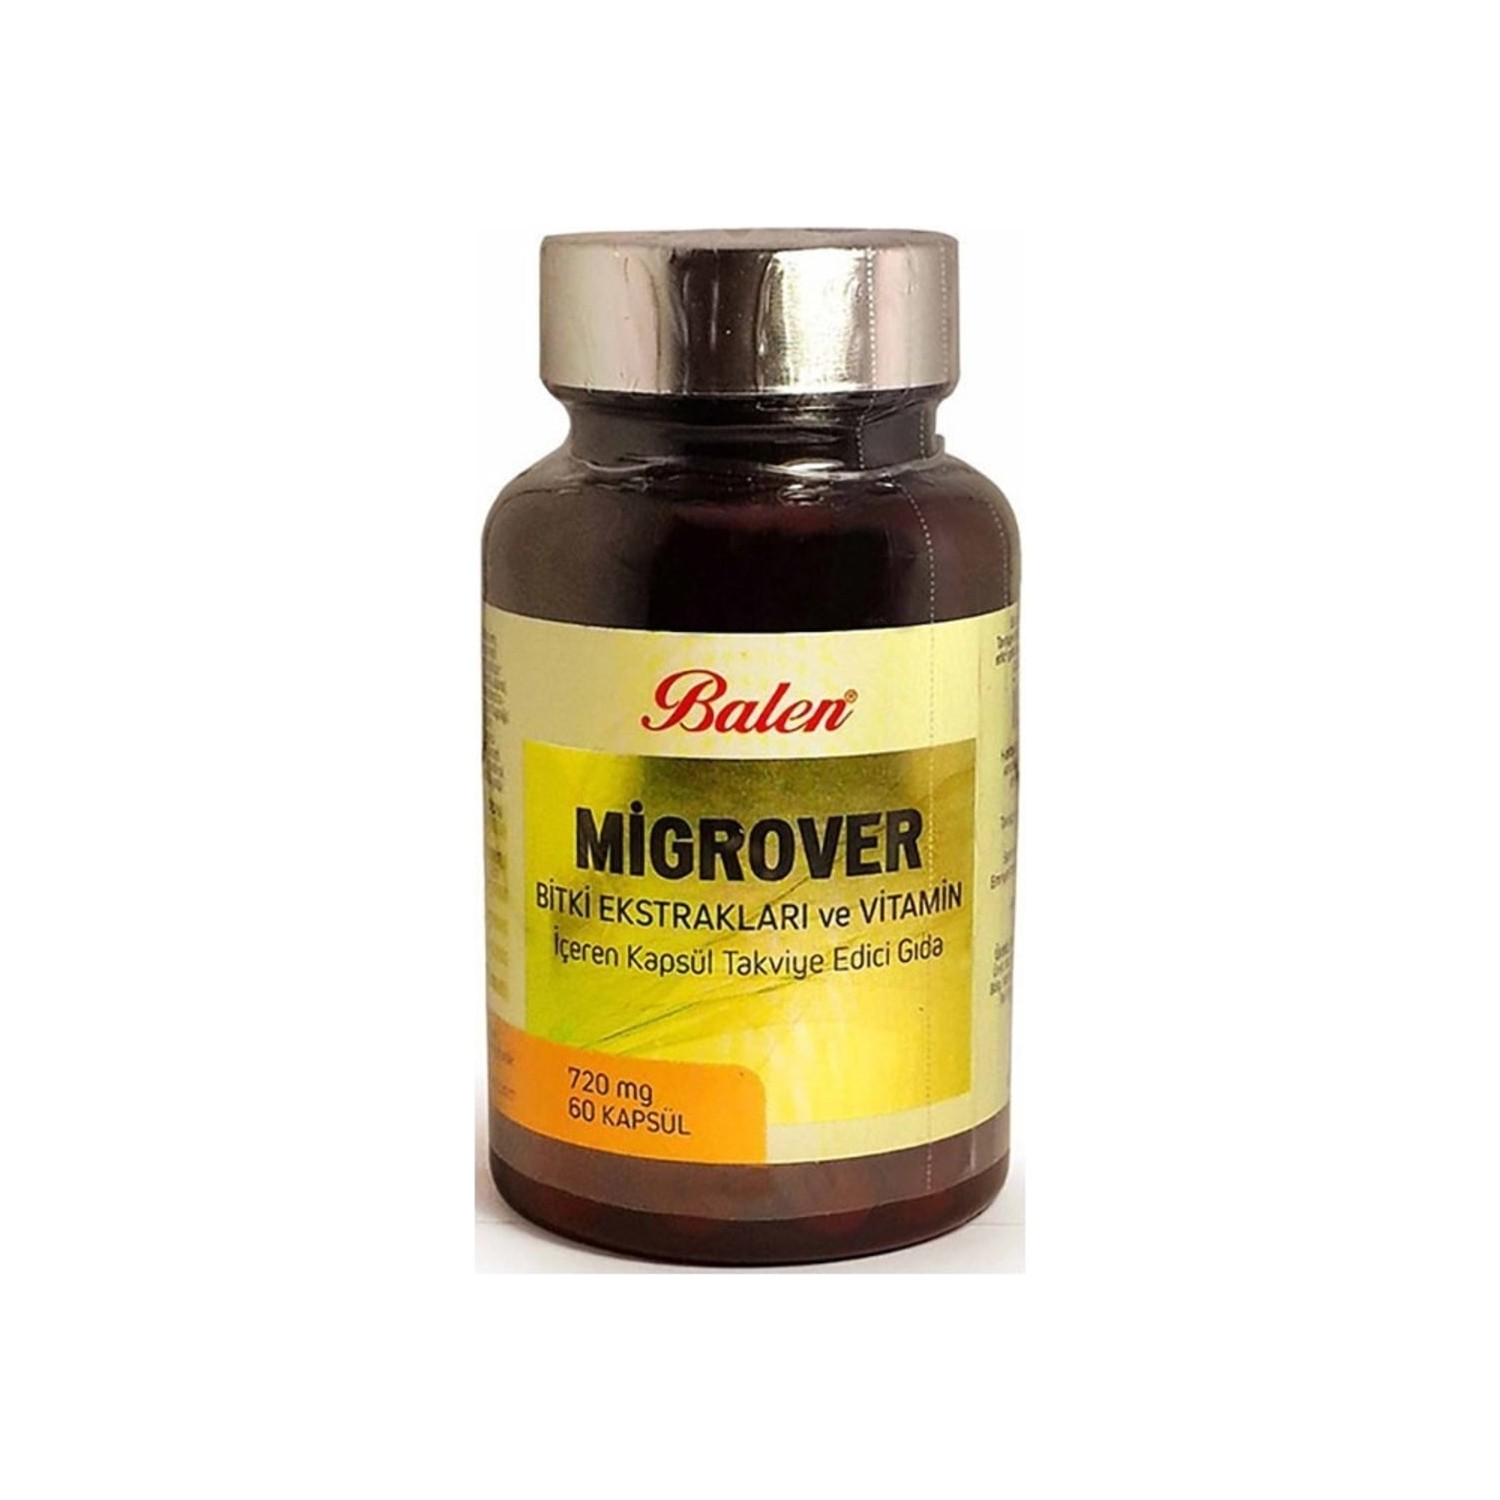 Капсулы Balen Migrover, содержащие растительные экстракты и витамины, 60 капсул, 720 мг